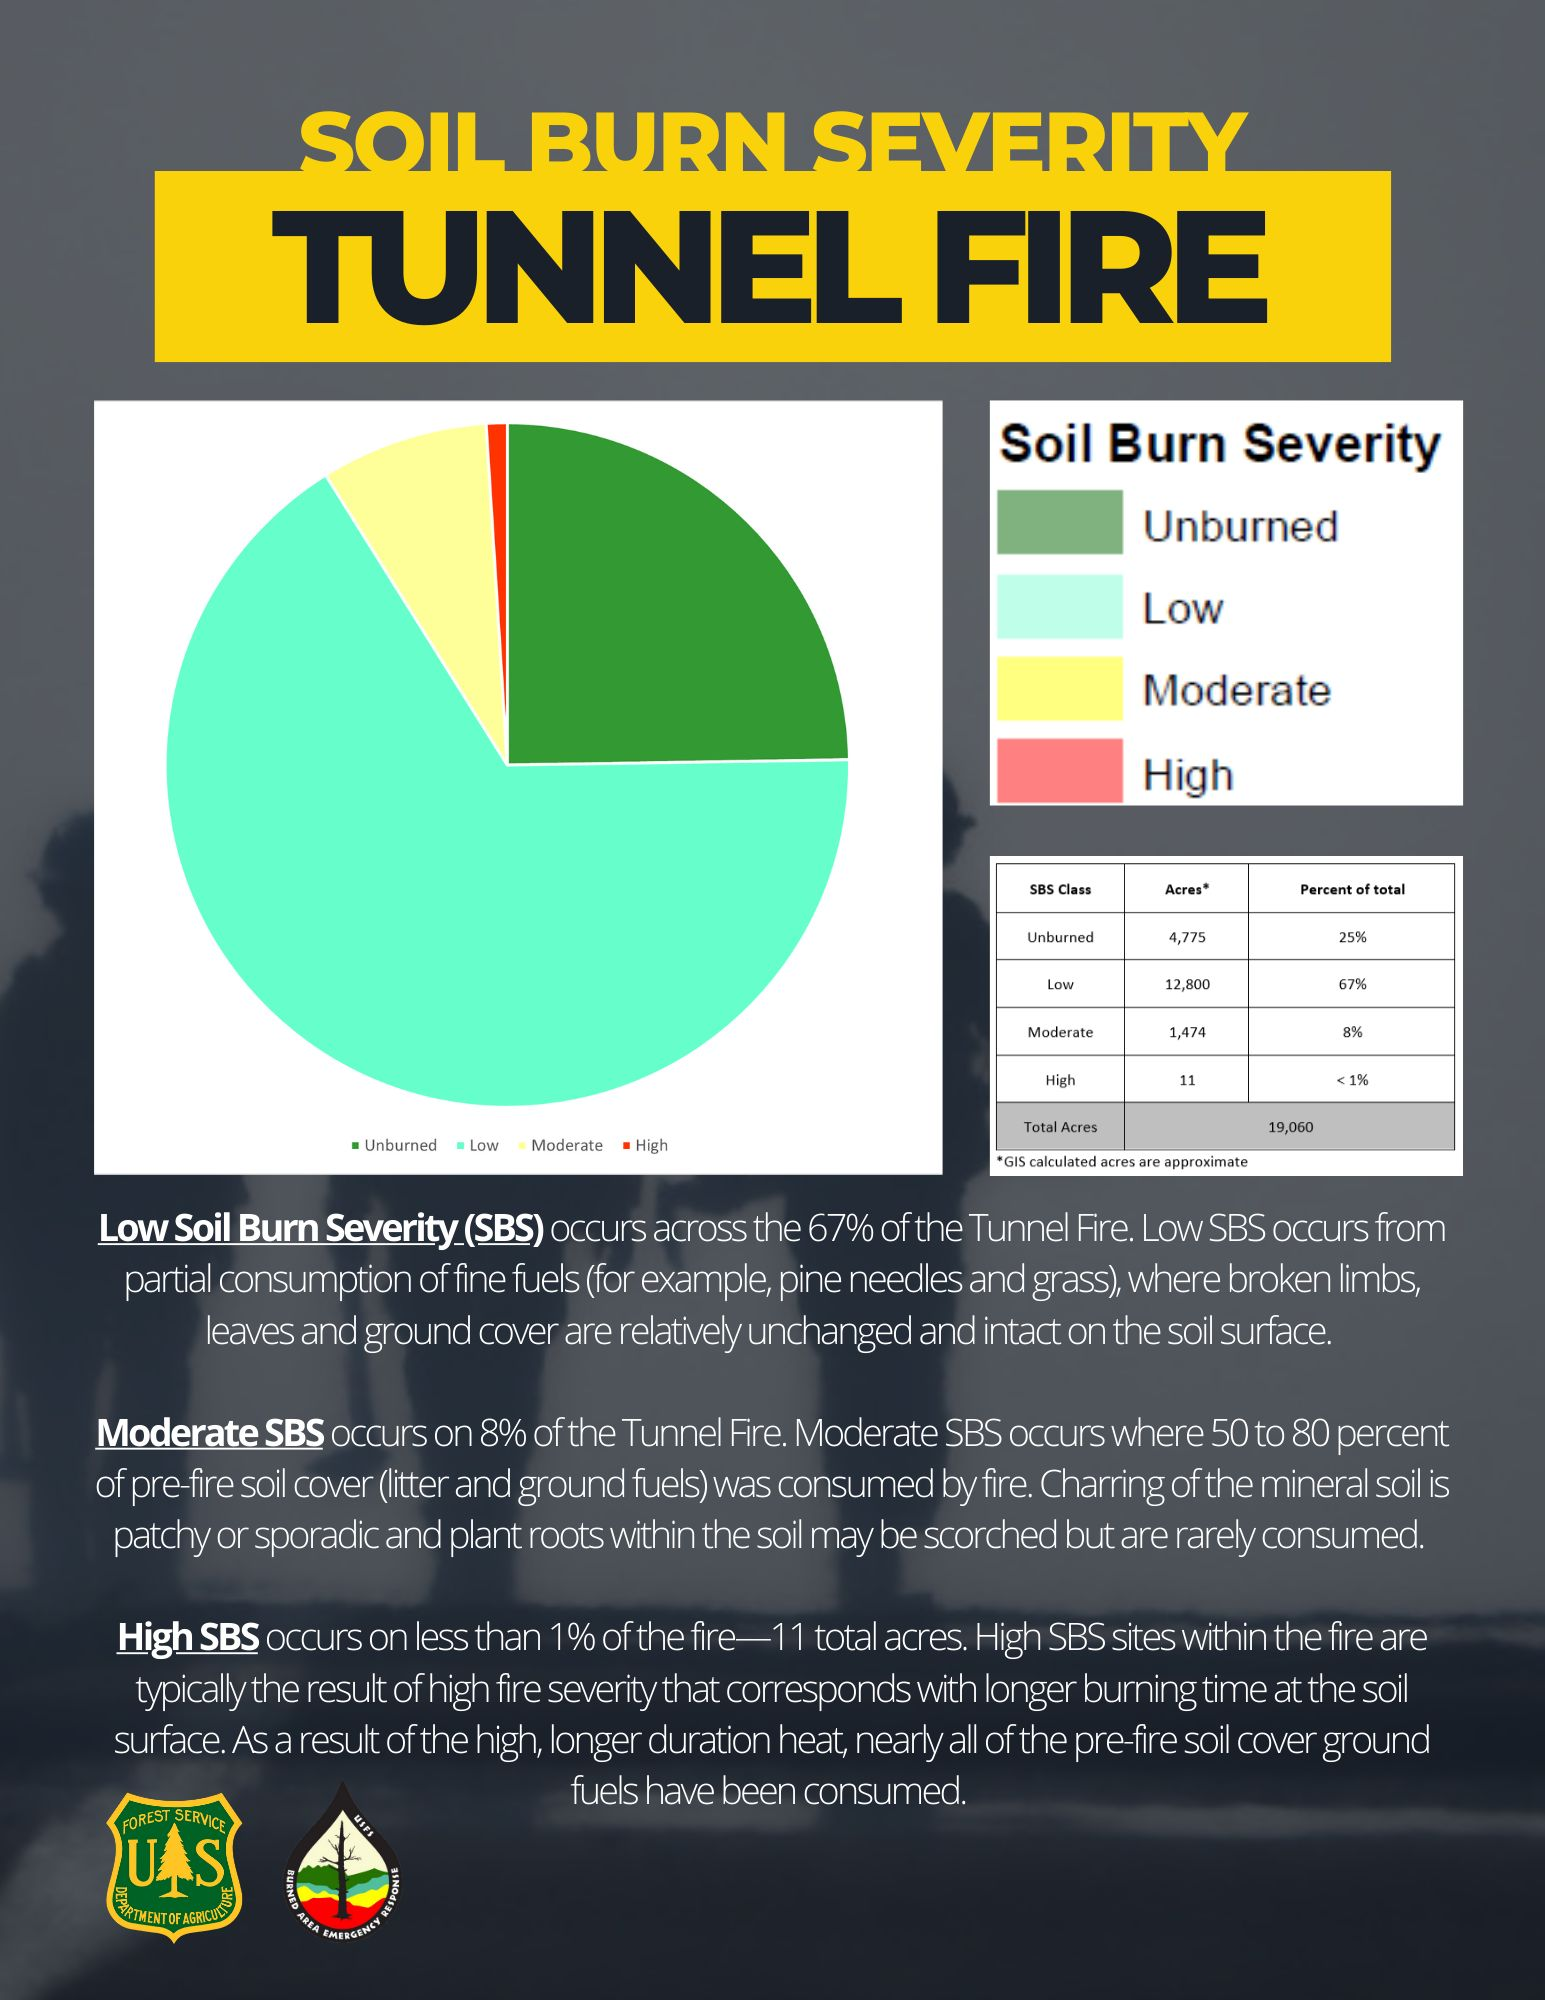 Tunnel Fire Soil Burn Severity